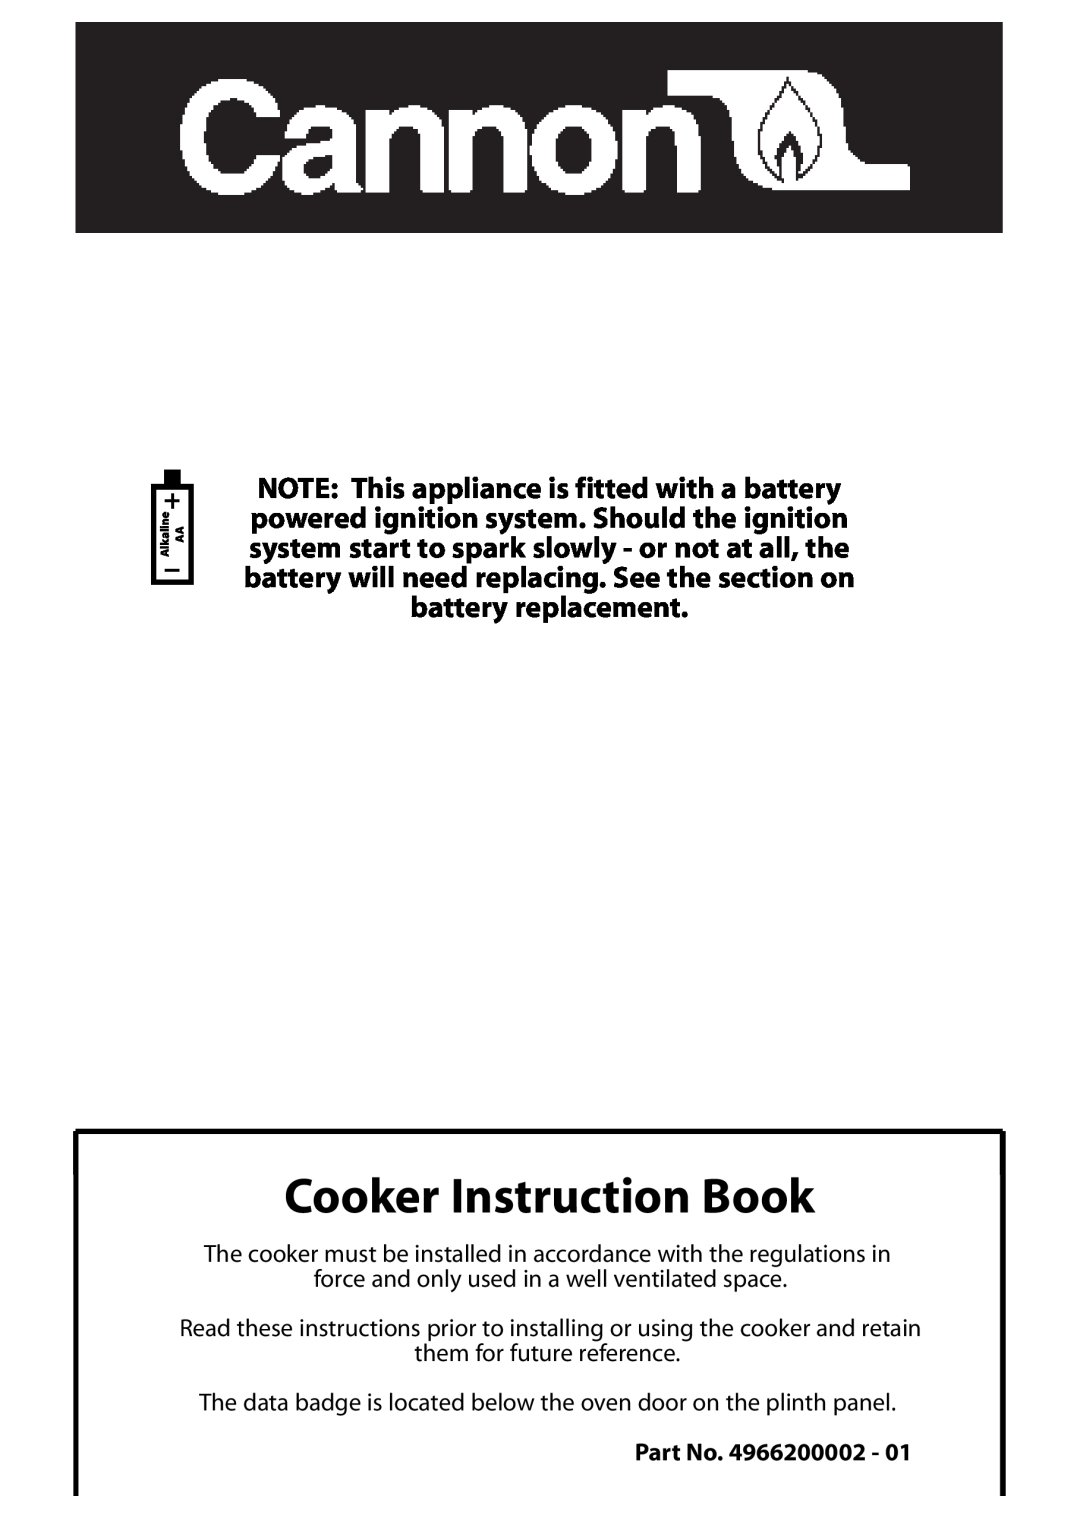 Cannon 10265G, 10269G Mk2, 10260G, 10258G, 10250G, 10255G, 10266G, 10256G, 10268G Mk2, 10251G manual Cooker Instruction Book 